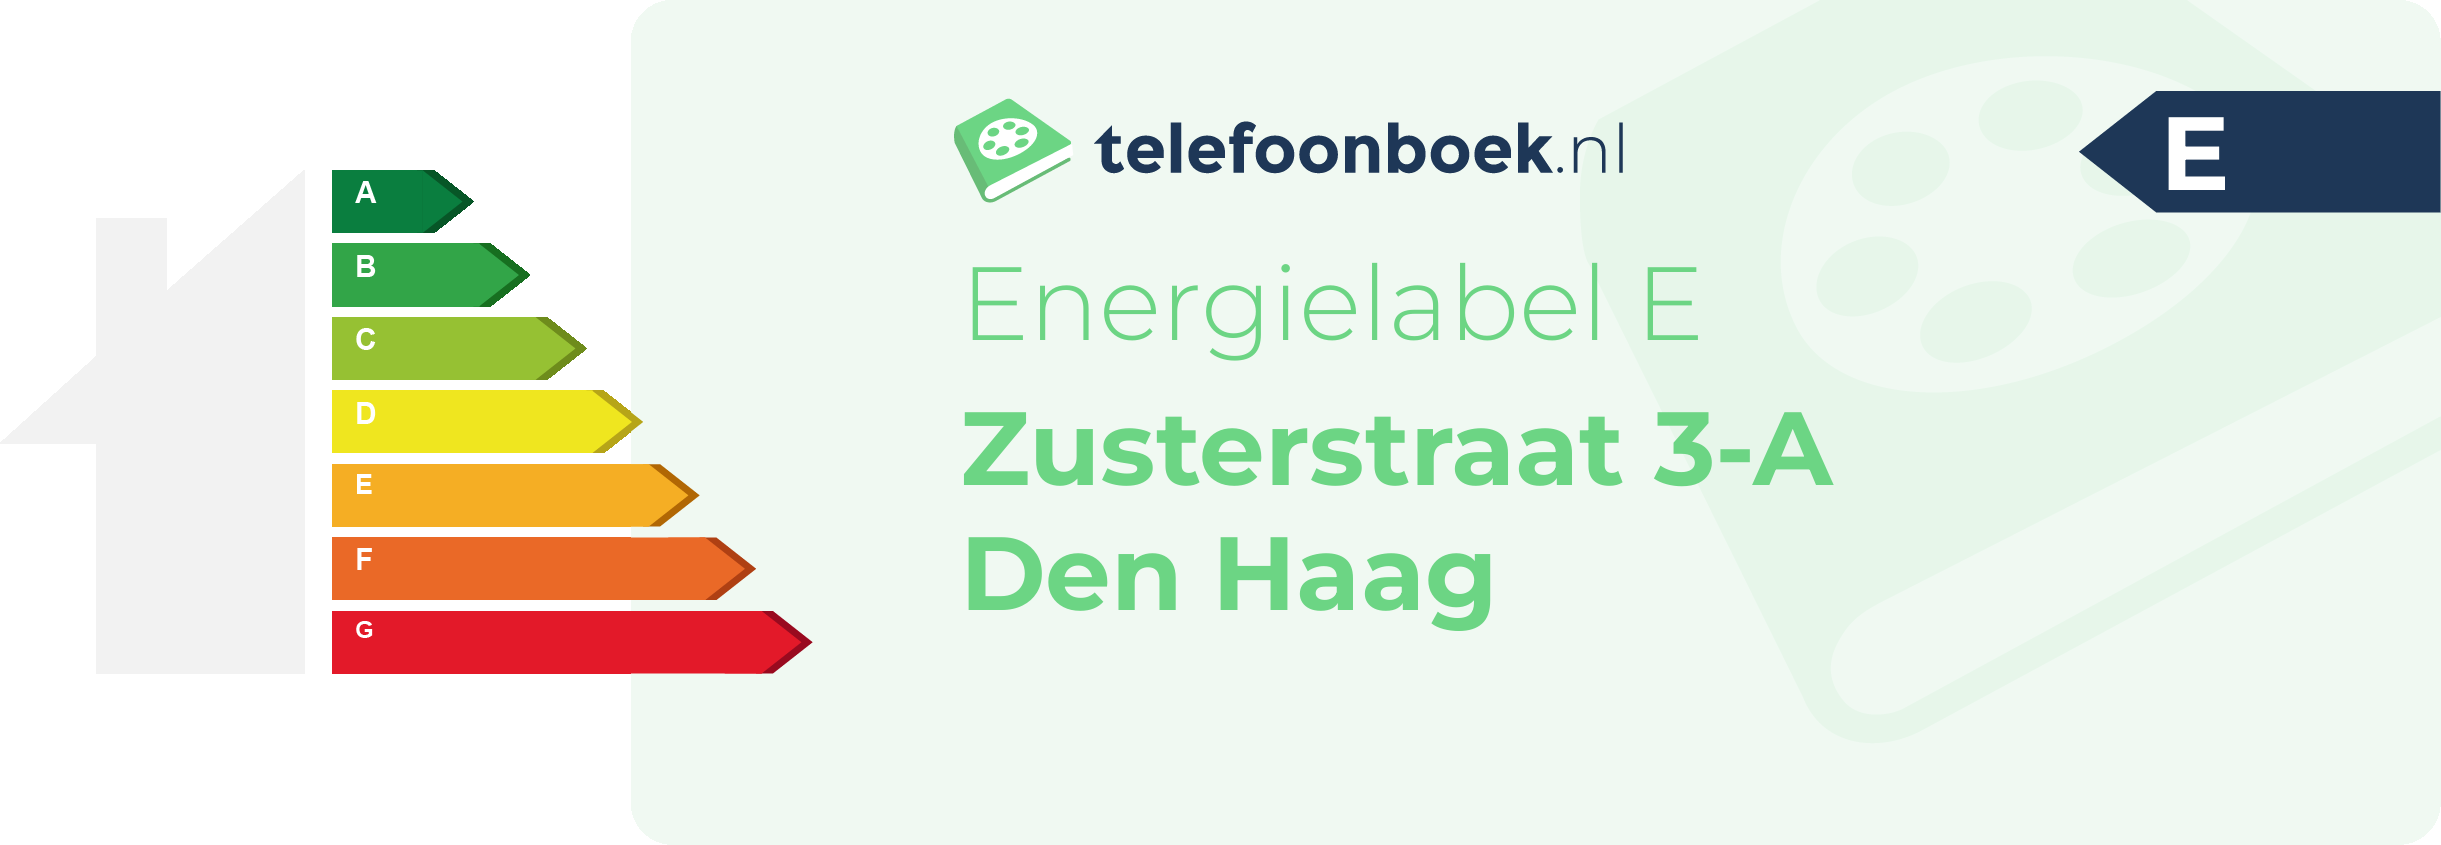 Energielabel Zusterstraat 3-A Den Haag